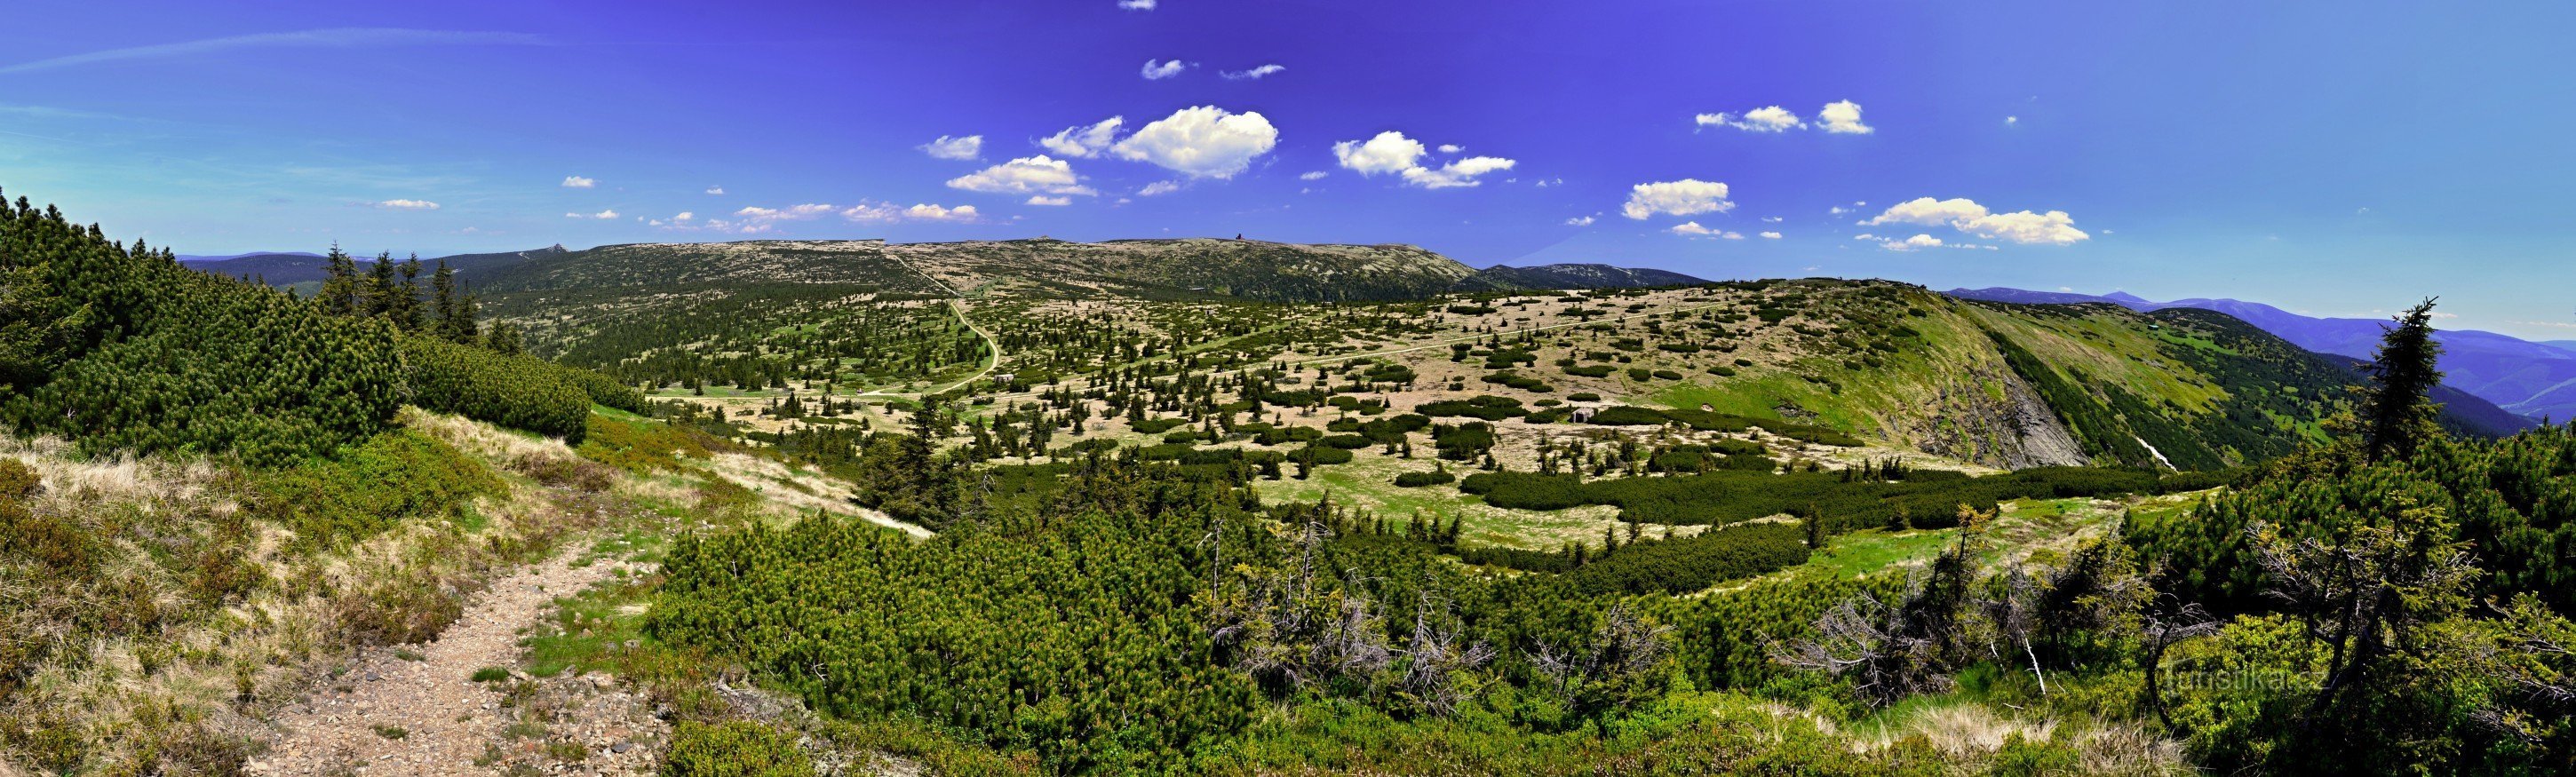 Krkonoše: panorama Krkonoše de la Kotle